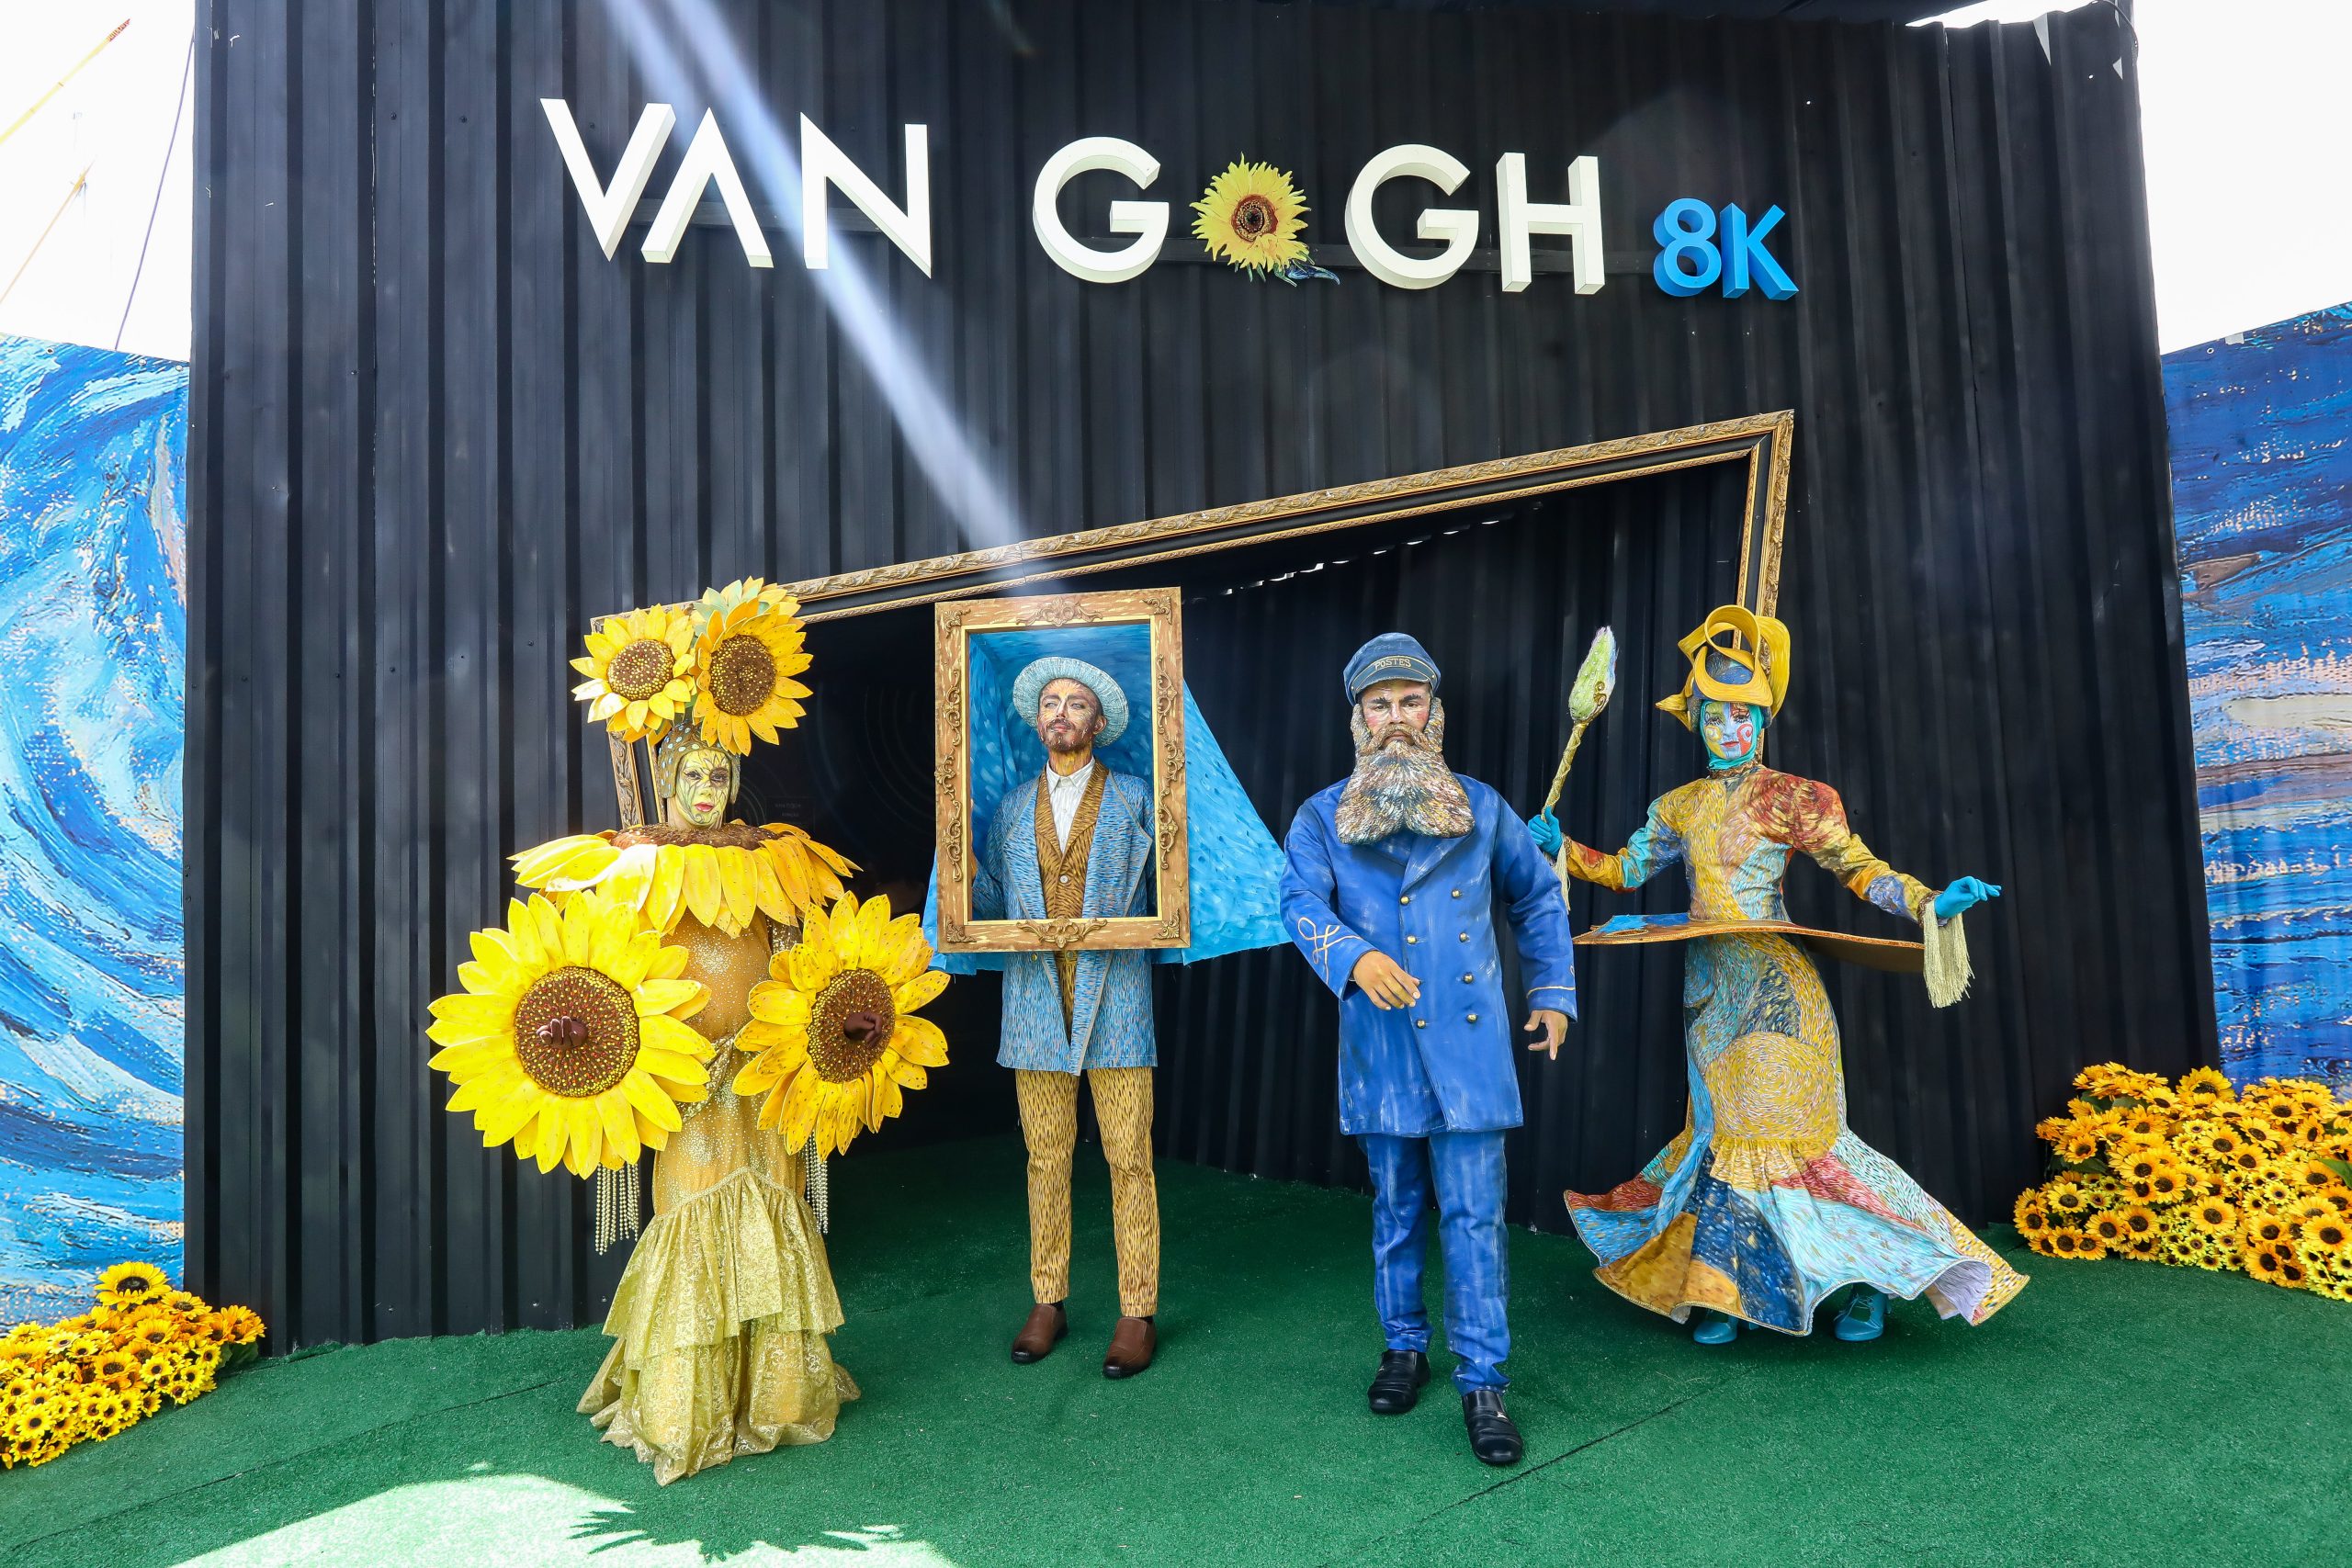 Exposição Van Gogh Live 8k chega aos últimos dias no Estacionamento do RioMar Fortaleza